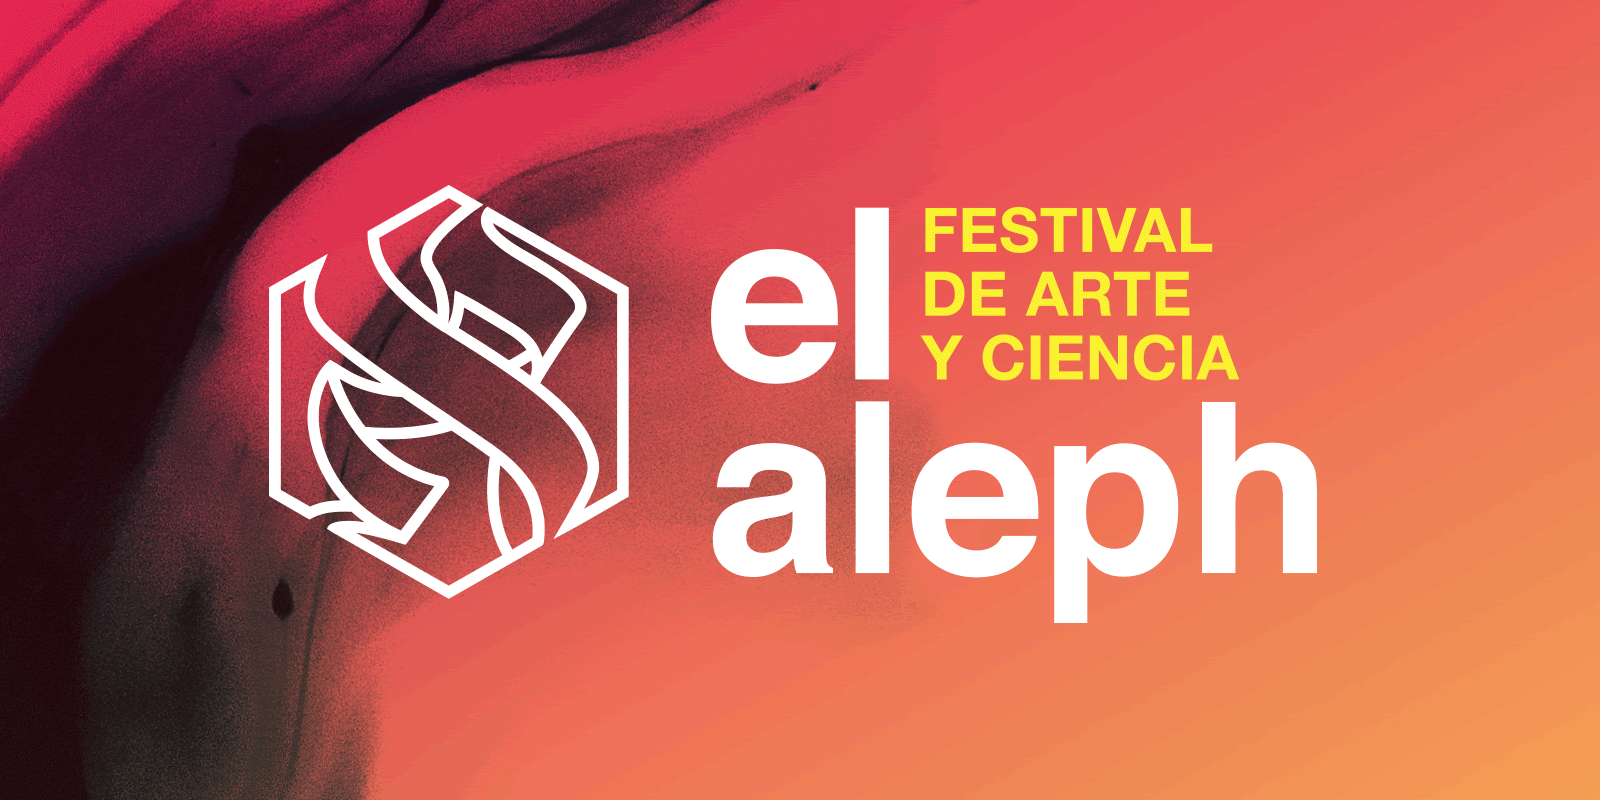 Transmisión: El Aleph. Festival de Arte y Ciencia  trae para ti éste miércoles 27 de mayo